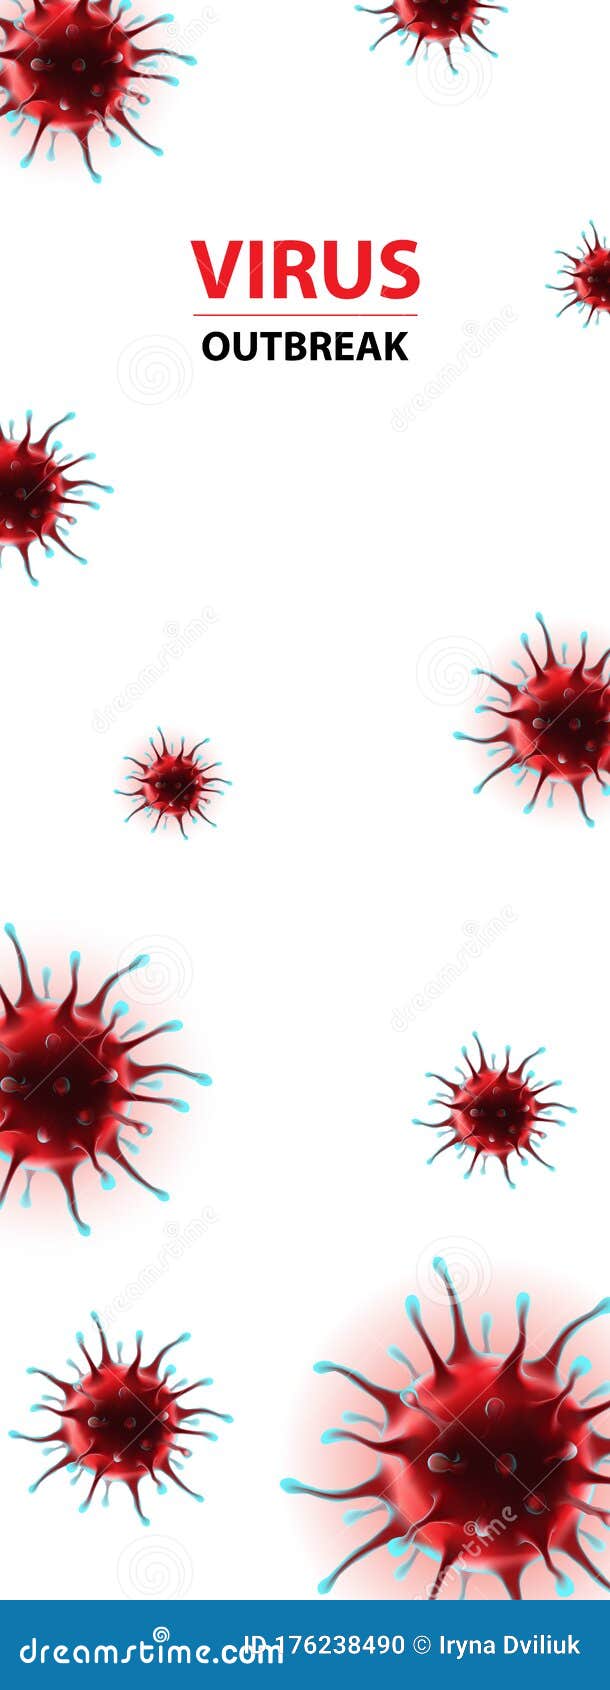 vertical social media banner coronavirus epidemia virus 